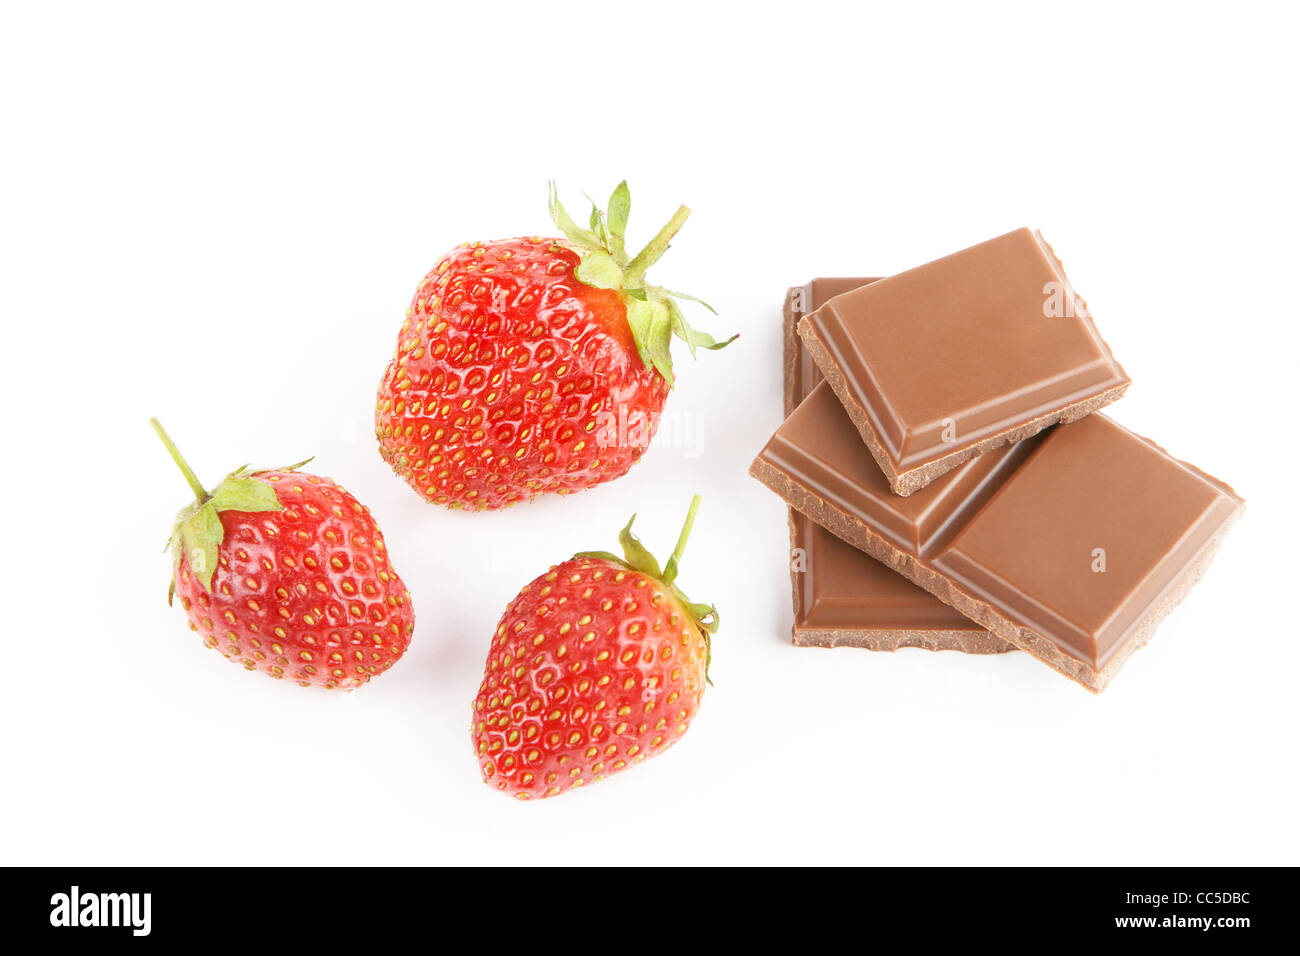 Chocolate and strawberries Stock Photo